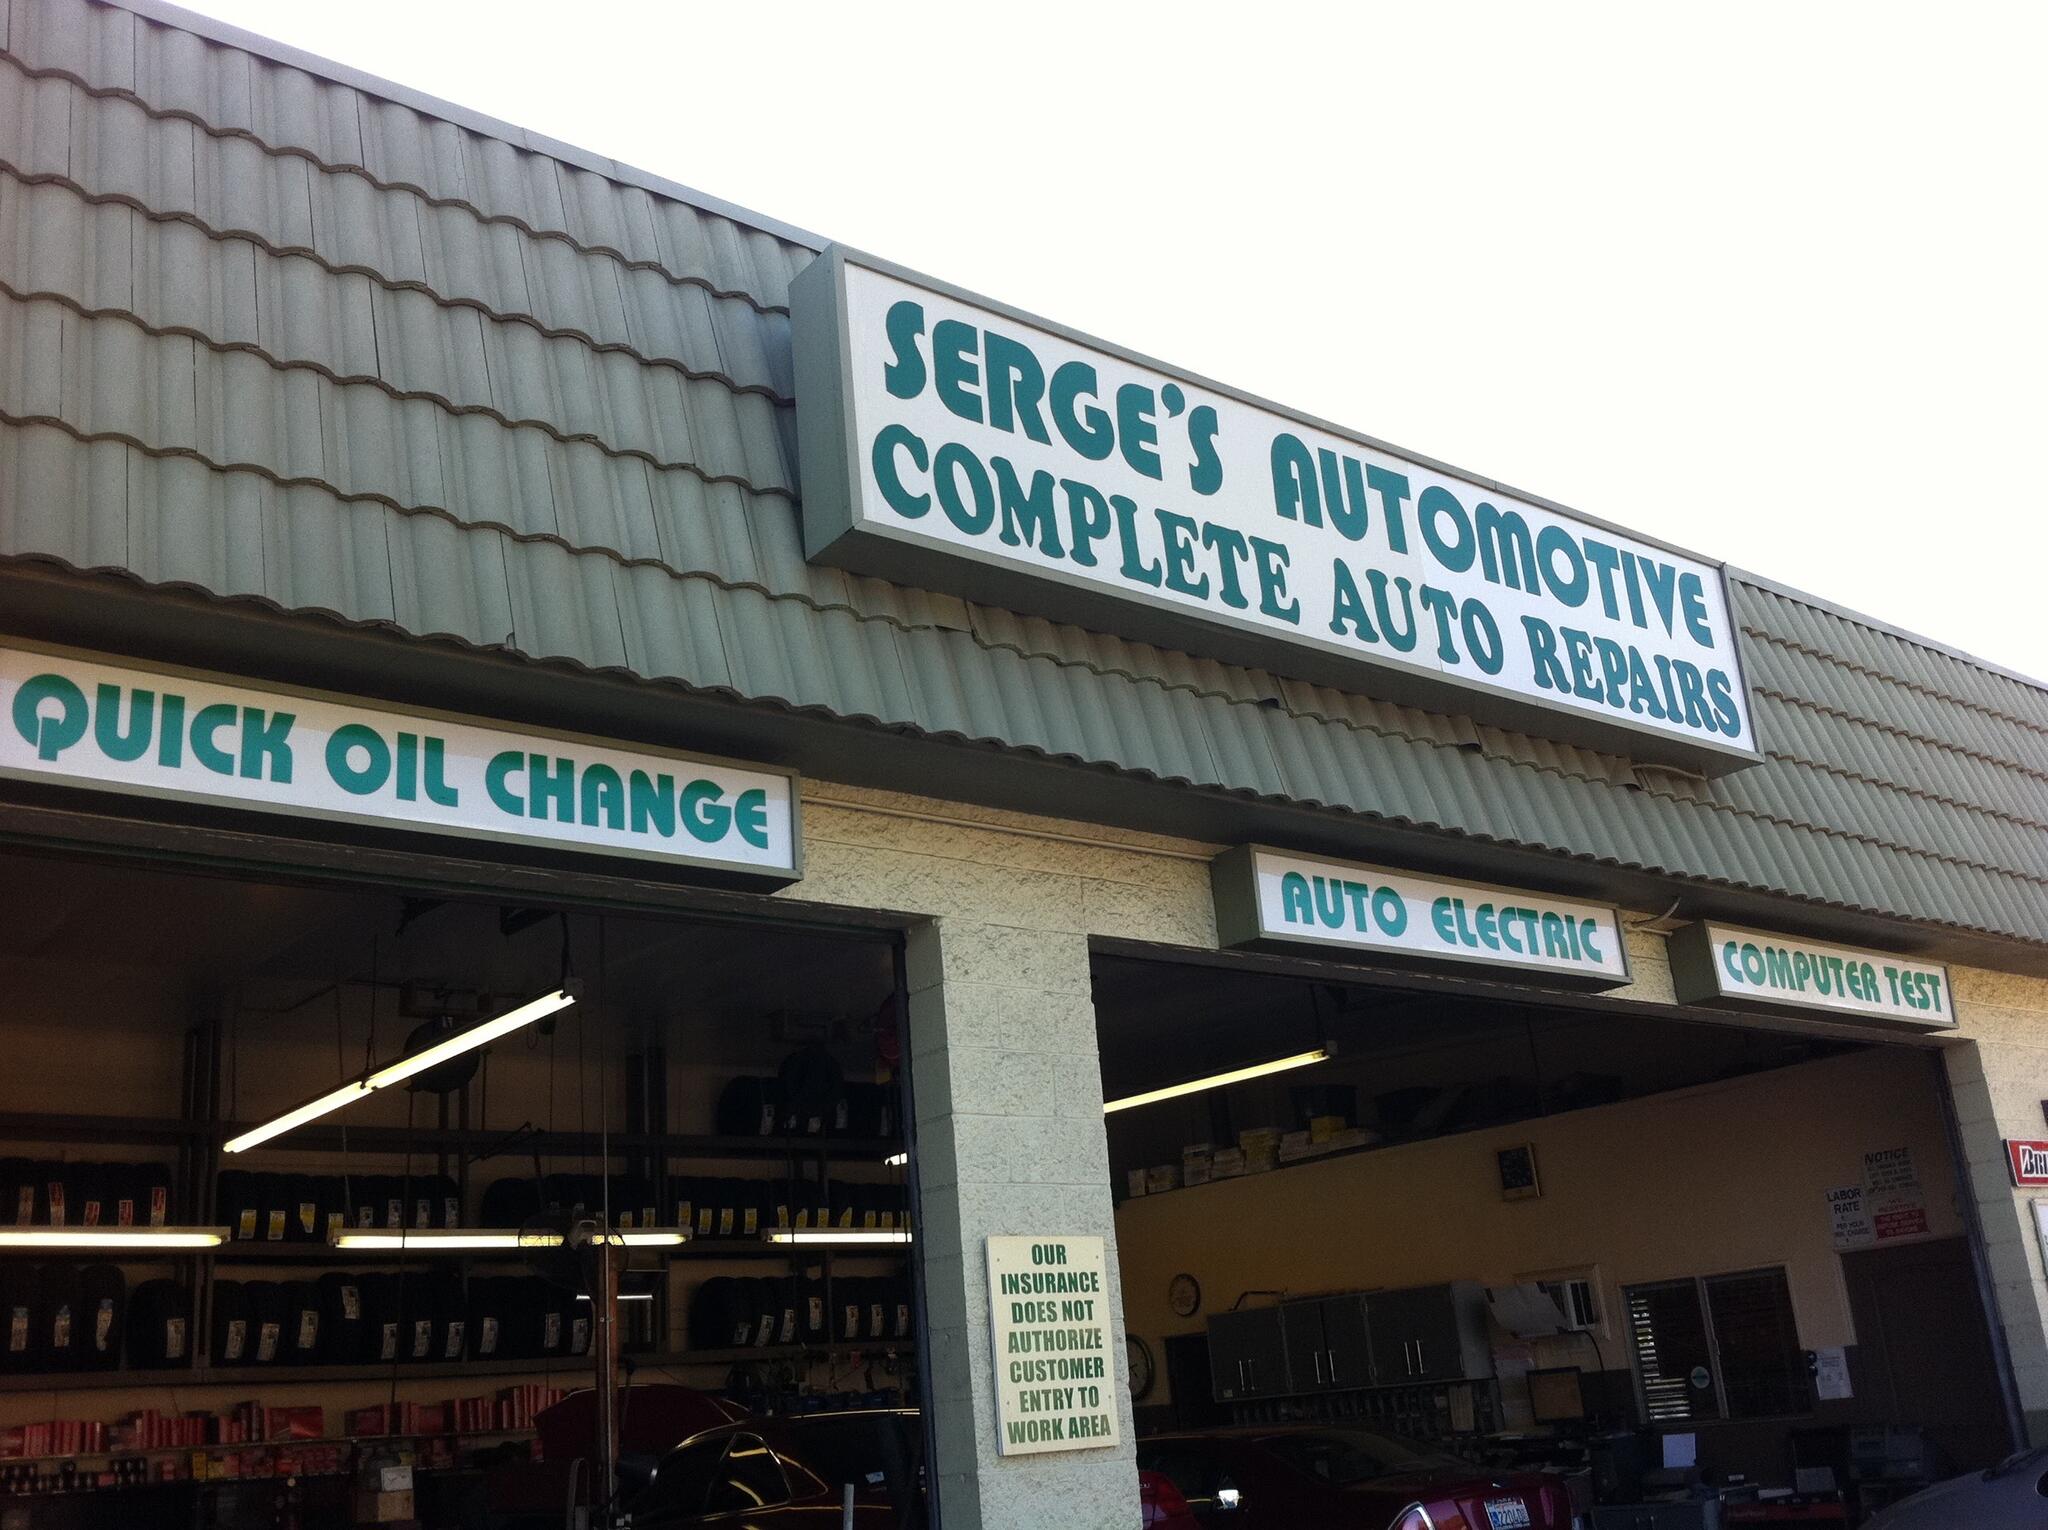 Serge's Automotive Mechanic Auto Repair Shop